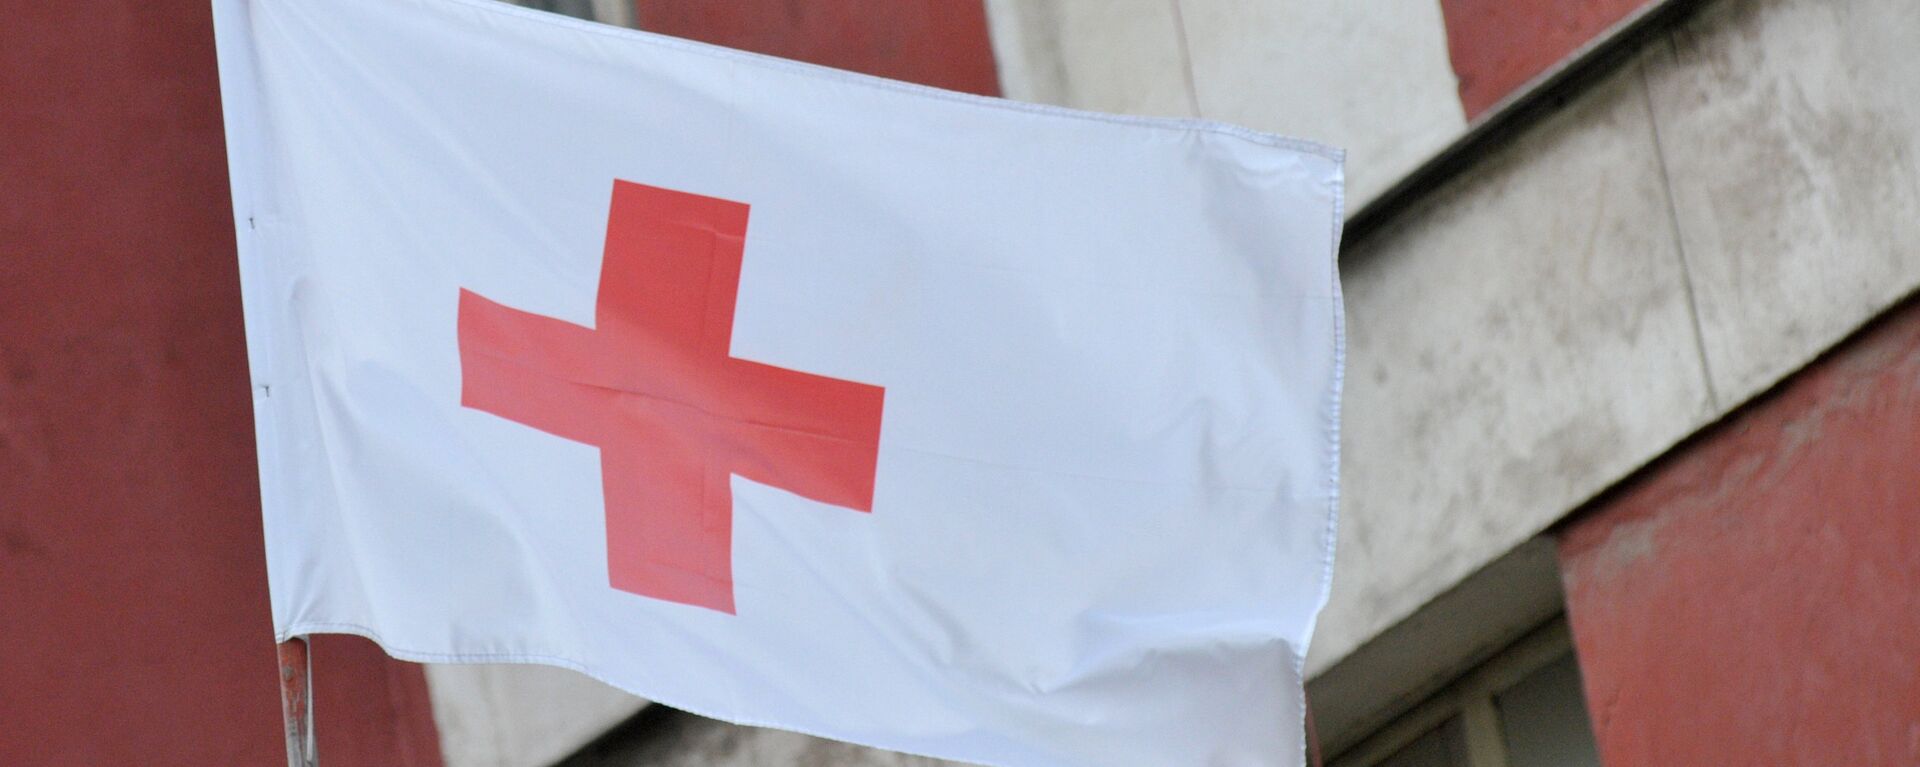 Флаг организации Красный крест - Sputnik Грузия, 1920, 12.04.2019